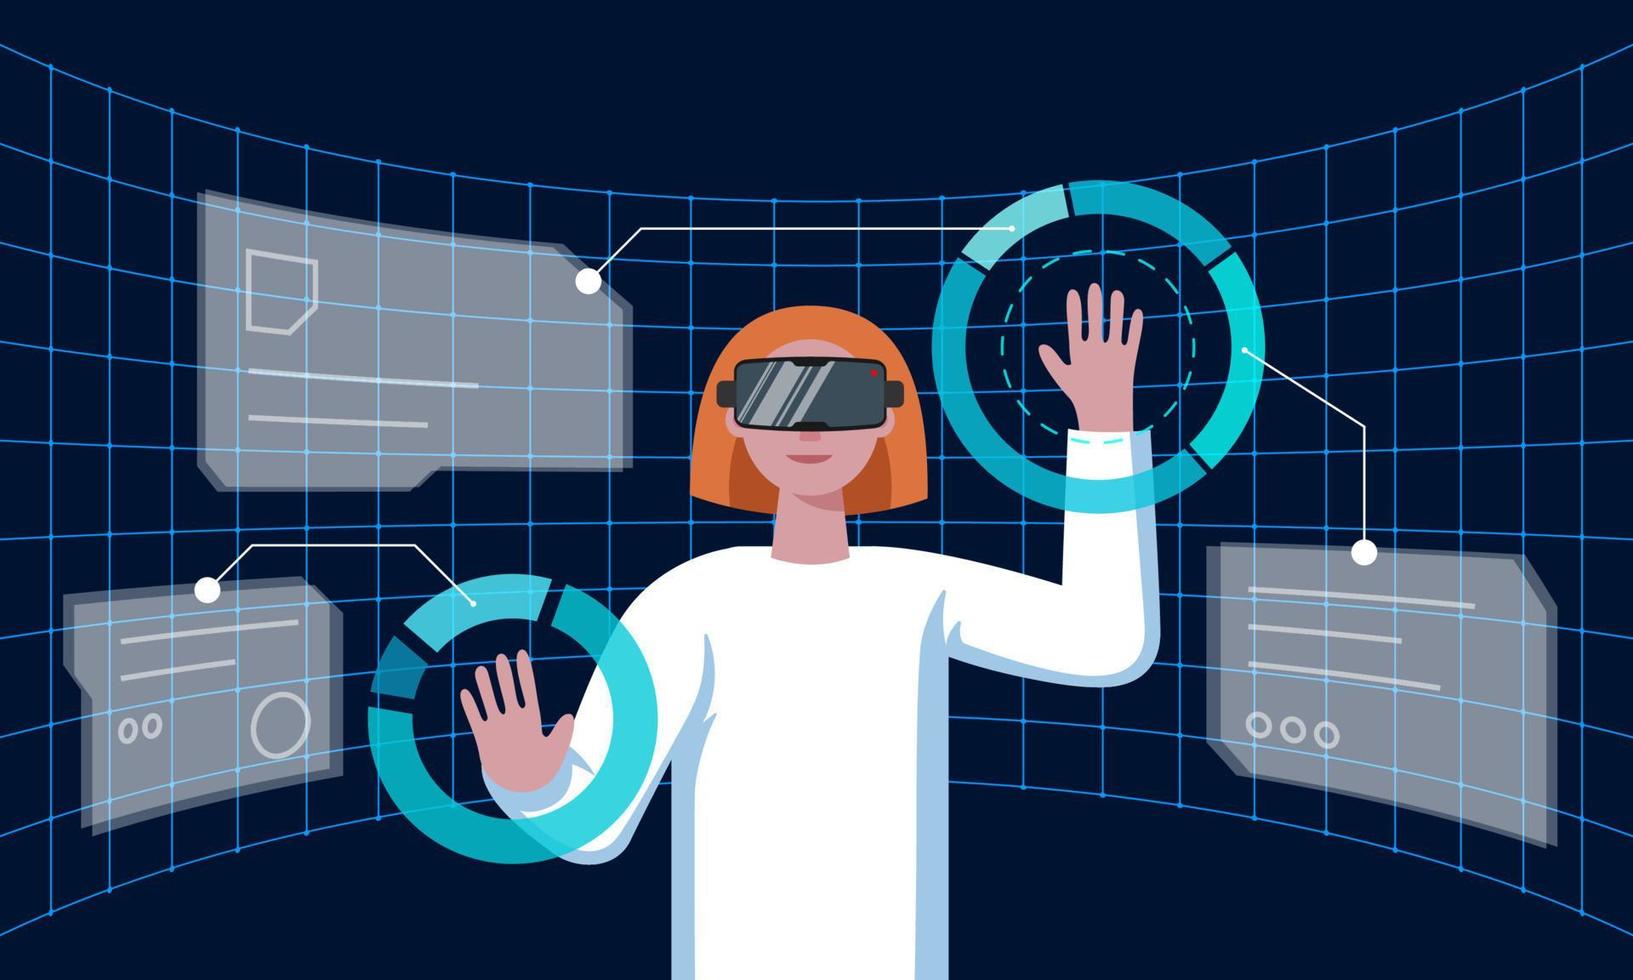 frau mit vr-helm, die sich mit futuristischer technologie verbindet, metaverse virtuelle realität und umgeben von großen daten des hologramms der zukünftigen schnittstelle 3d. Wissenschaftsfrau, die mit einem Meta-Cyberspace-Headset arbeitet. Folge vektor